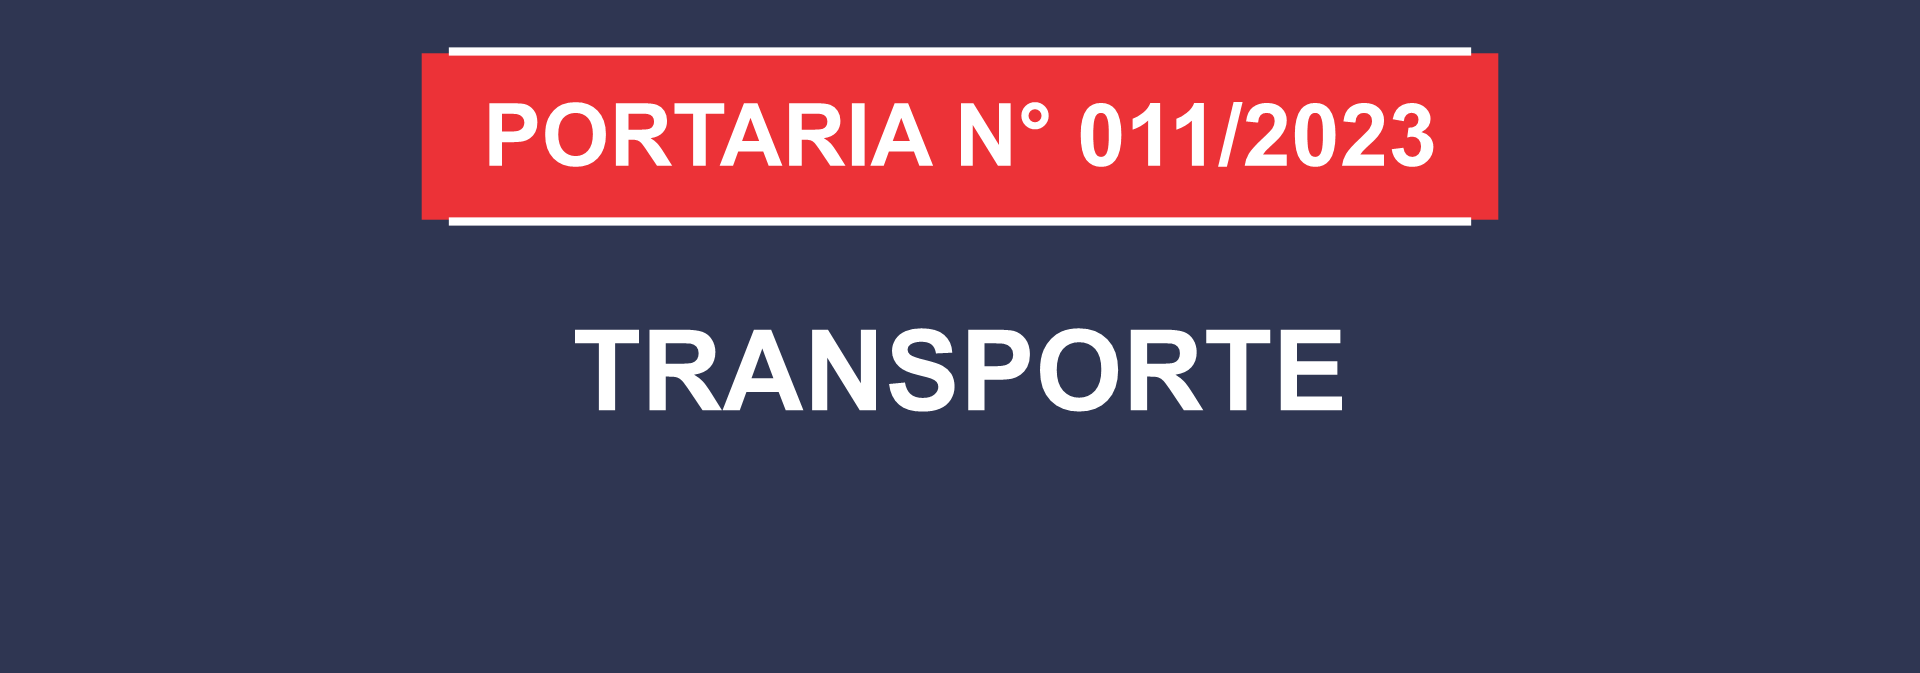 notícia: PORTARIA Nº 011/2023 - TRANSPORTE - GAB/SEDUC, DE 14 DE MARÇO DE 2023